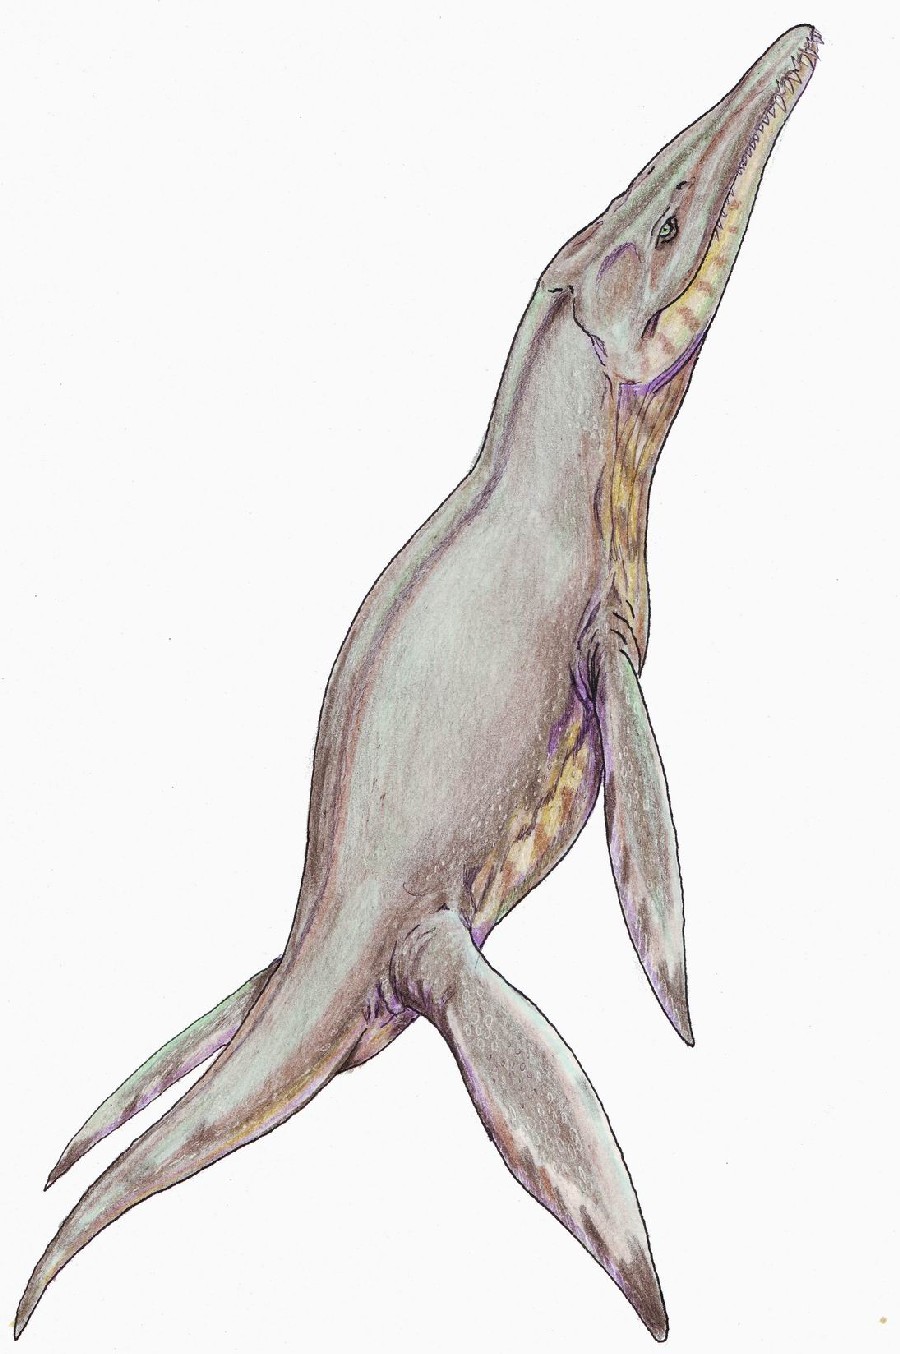 Pliosaurus
(Плиозавр), 